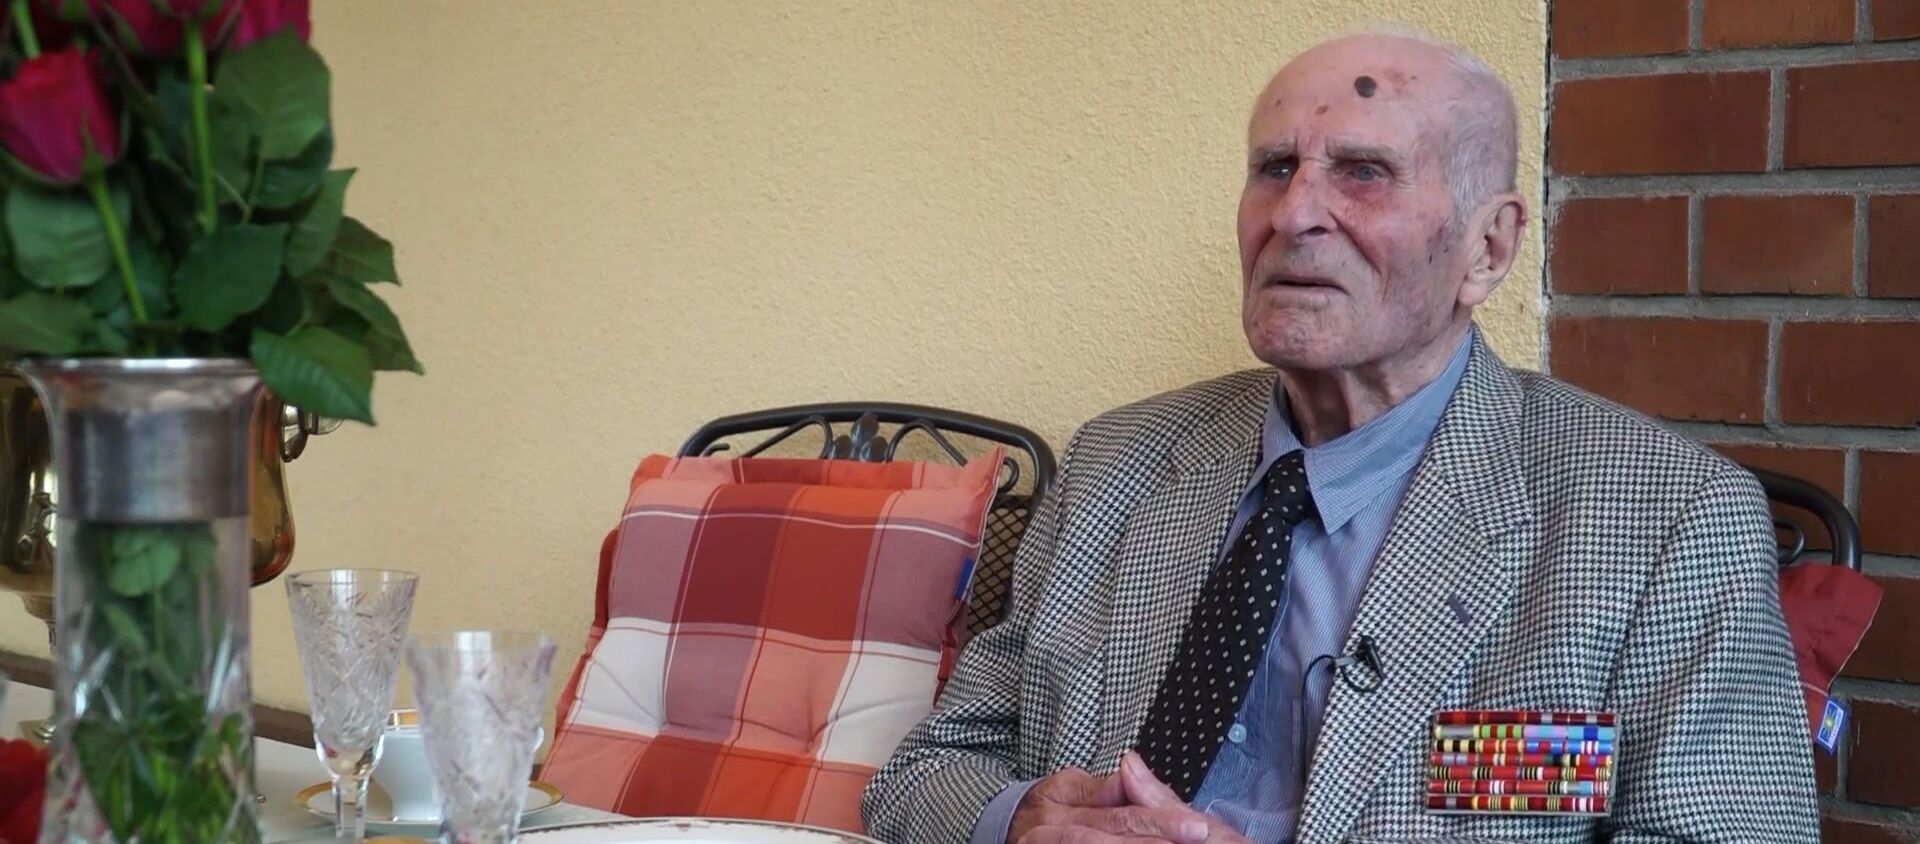 Ветеран ВОВ из Германии загадал желание на свой 100-летний юбилей - Sputnik Азербайджан, 1920, 17.07.2020